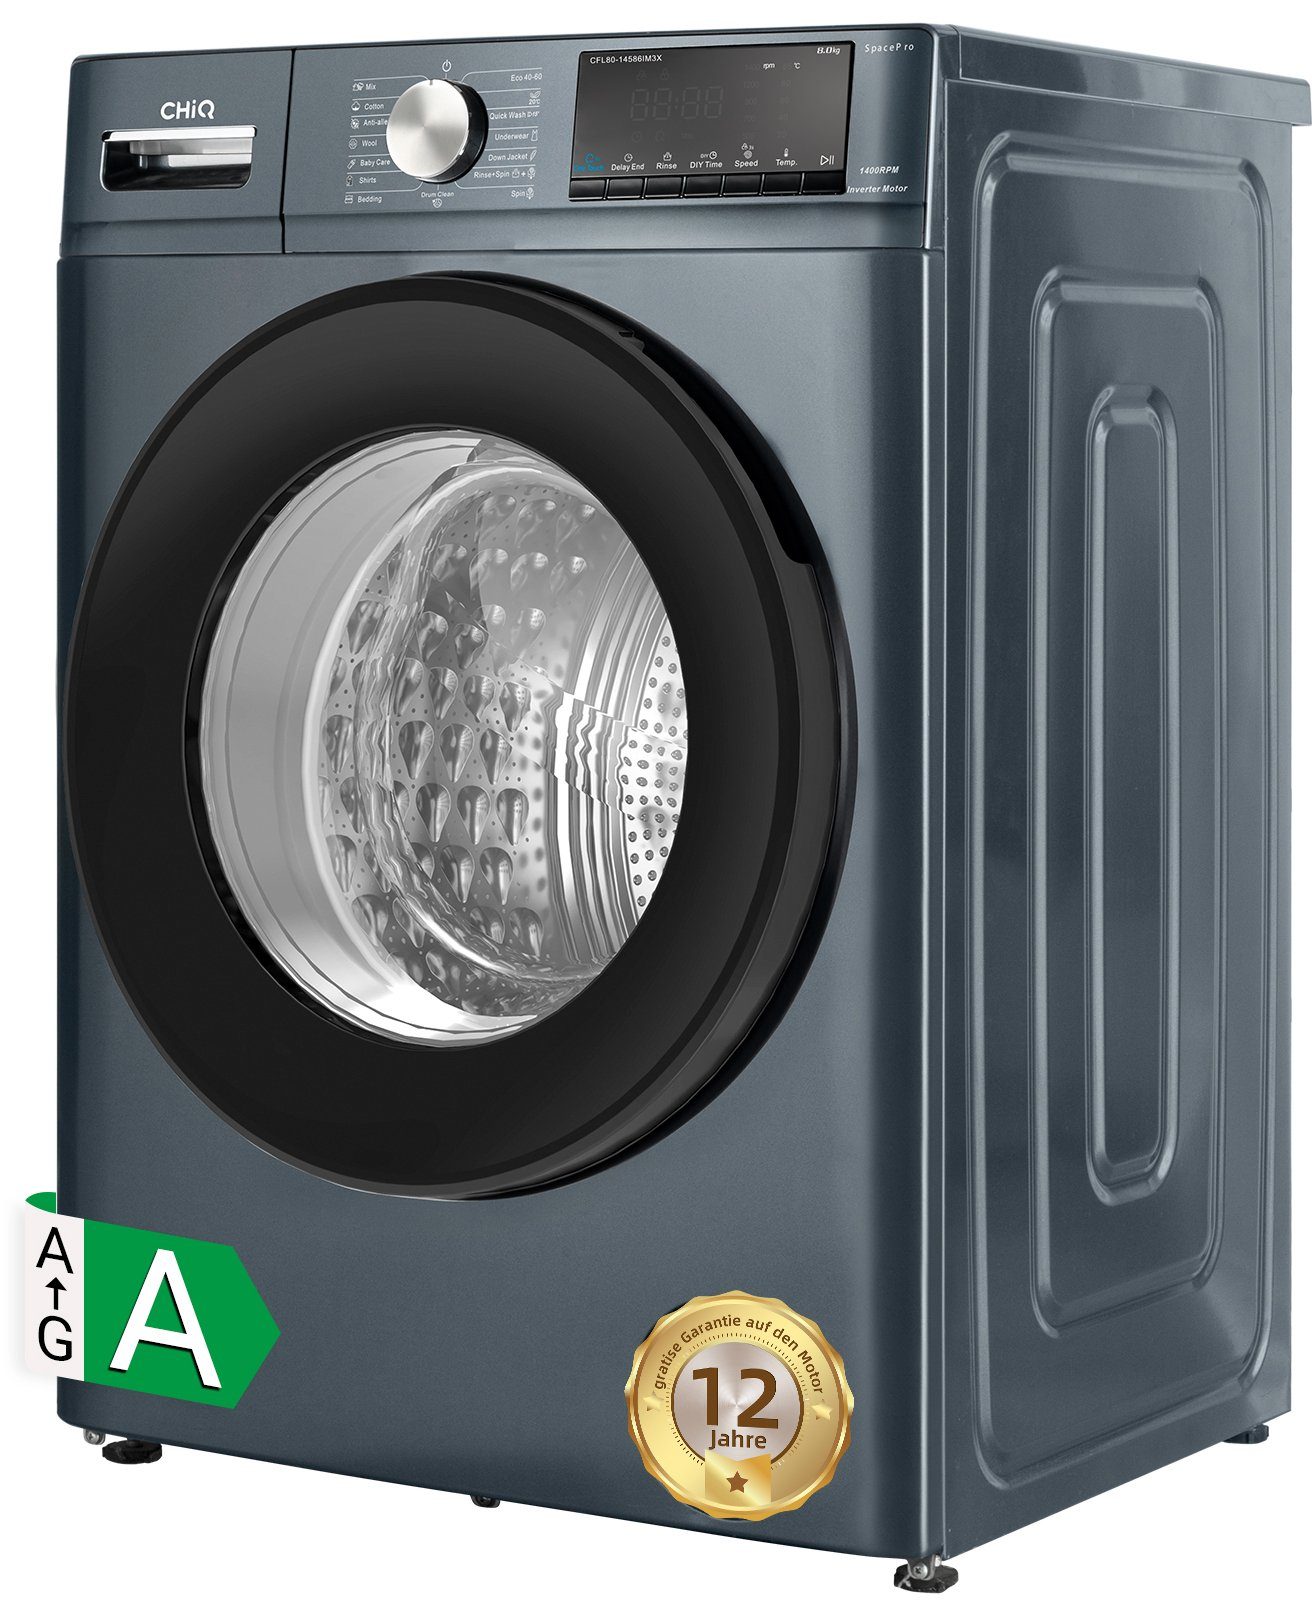 CHiQ Waschmaschine CFL80-14586IM3XA, 8 kg, 1400 U/min, Inverter-Motor, Dampfwäsche, 12 Jahre Gratis Garantie auf den Motor